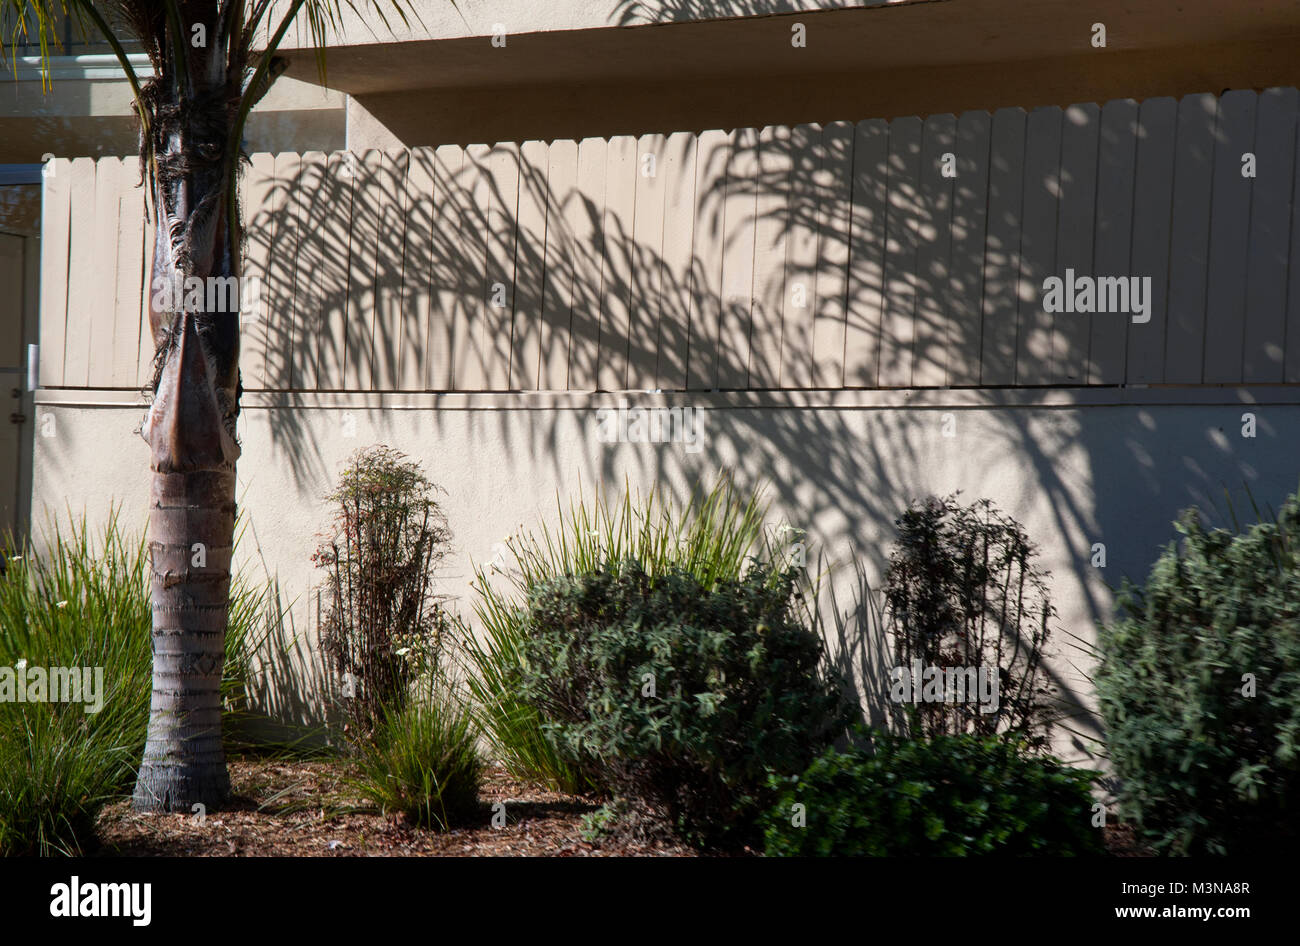 Landschaftsgestaltung im Apartment Gebäude auf Washington Blvd., Los Angeles, CA Stockfoto